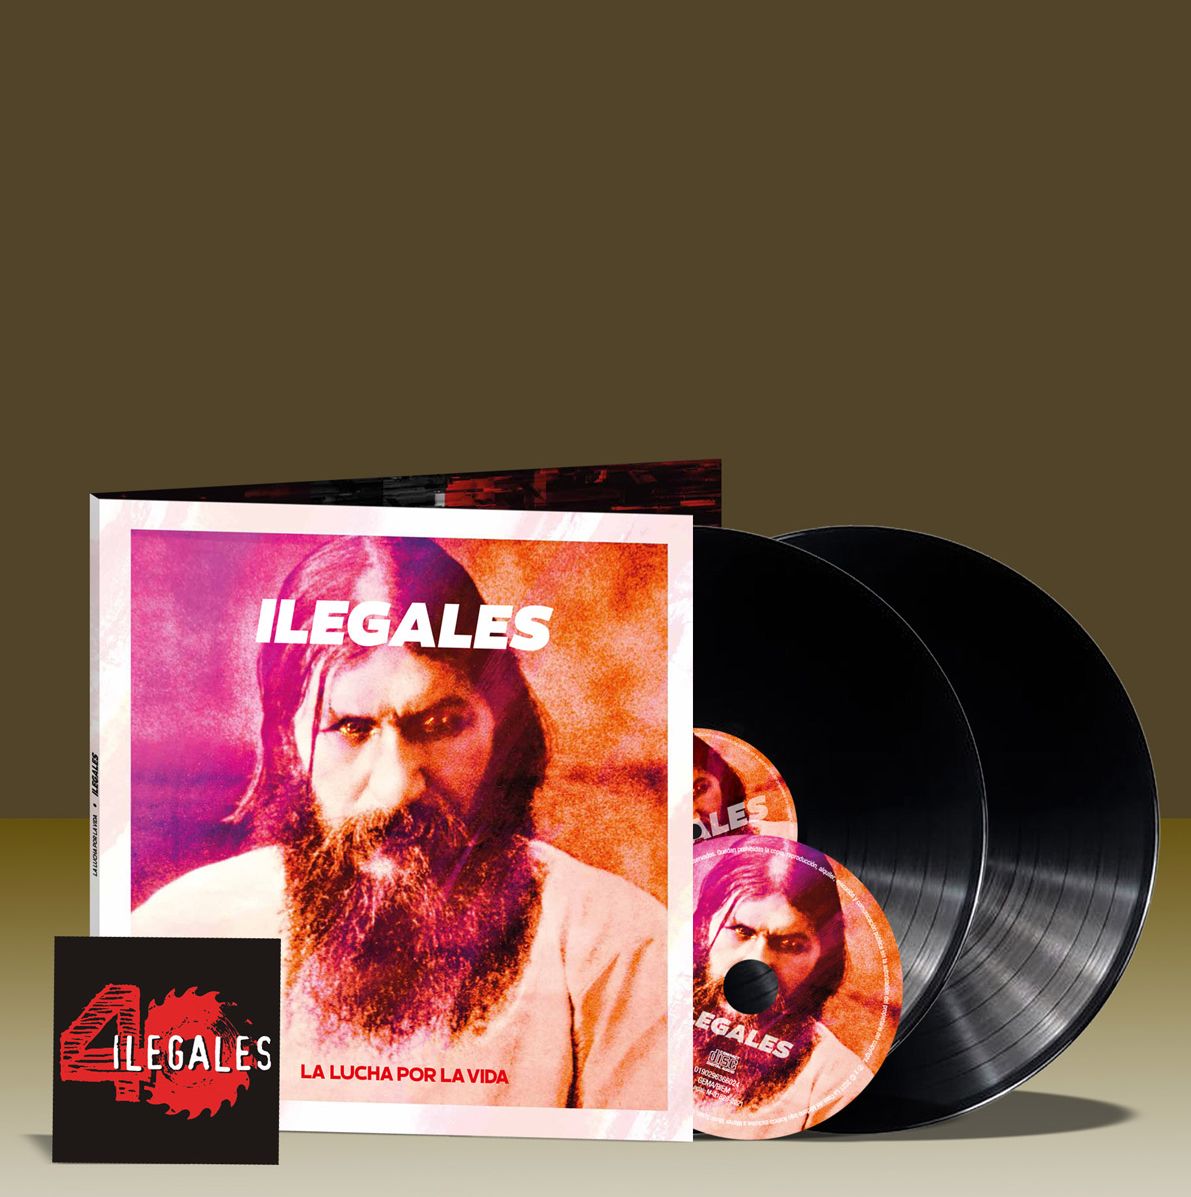 Ilegales - La lucha por la vida (Álbum)